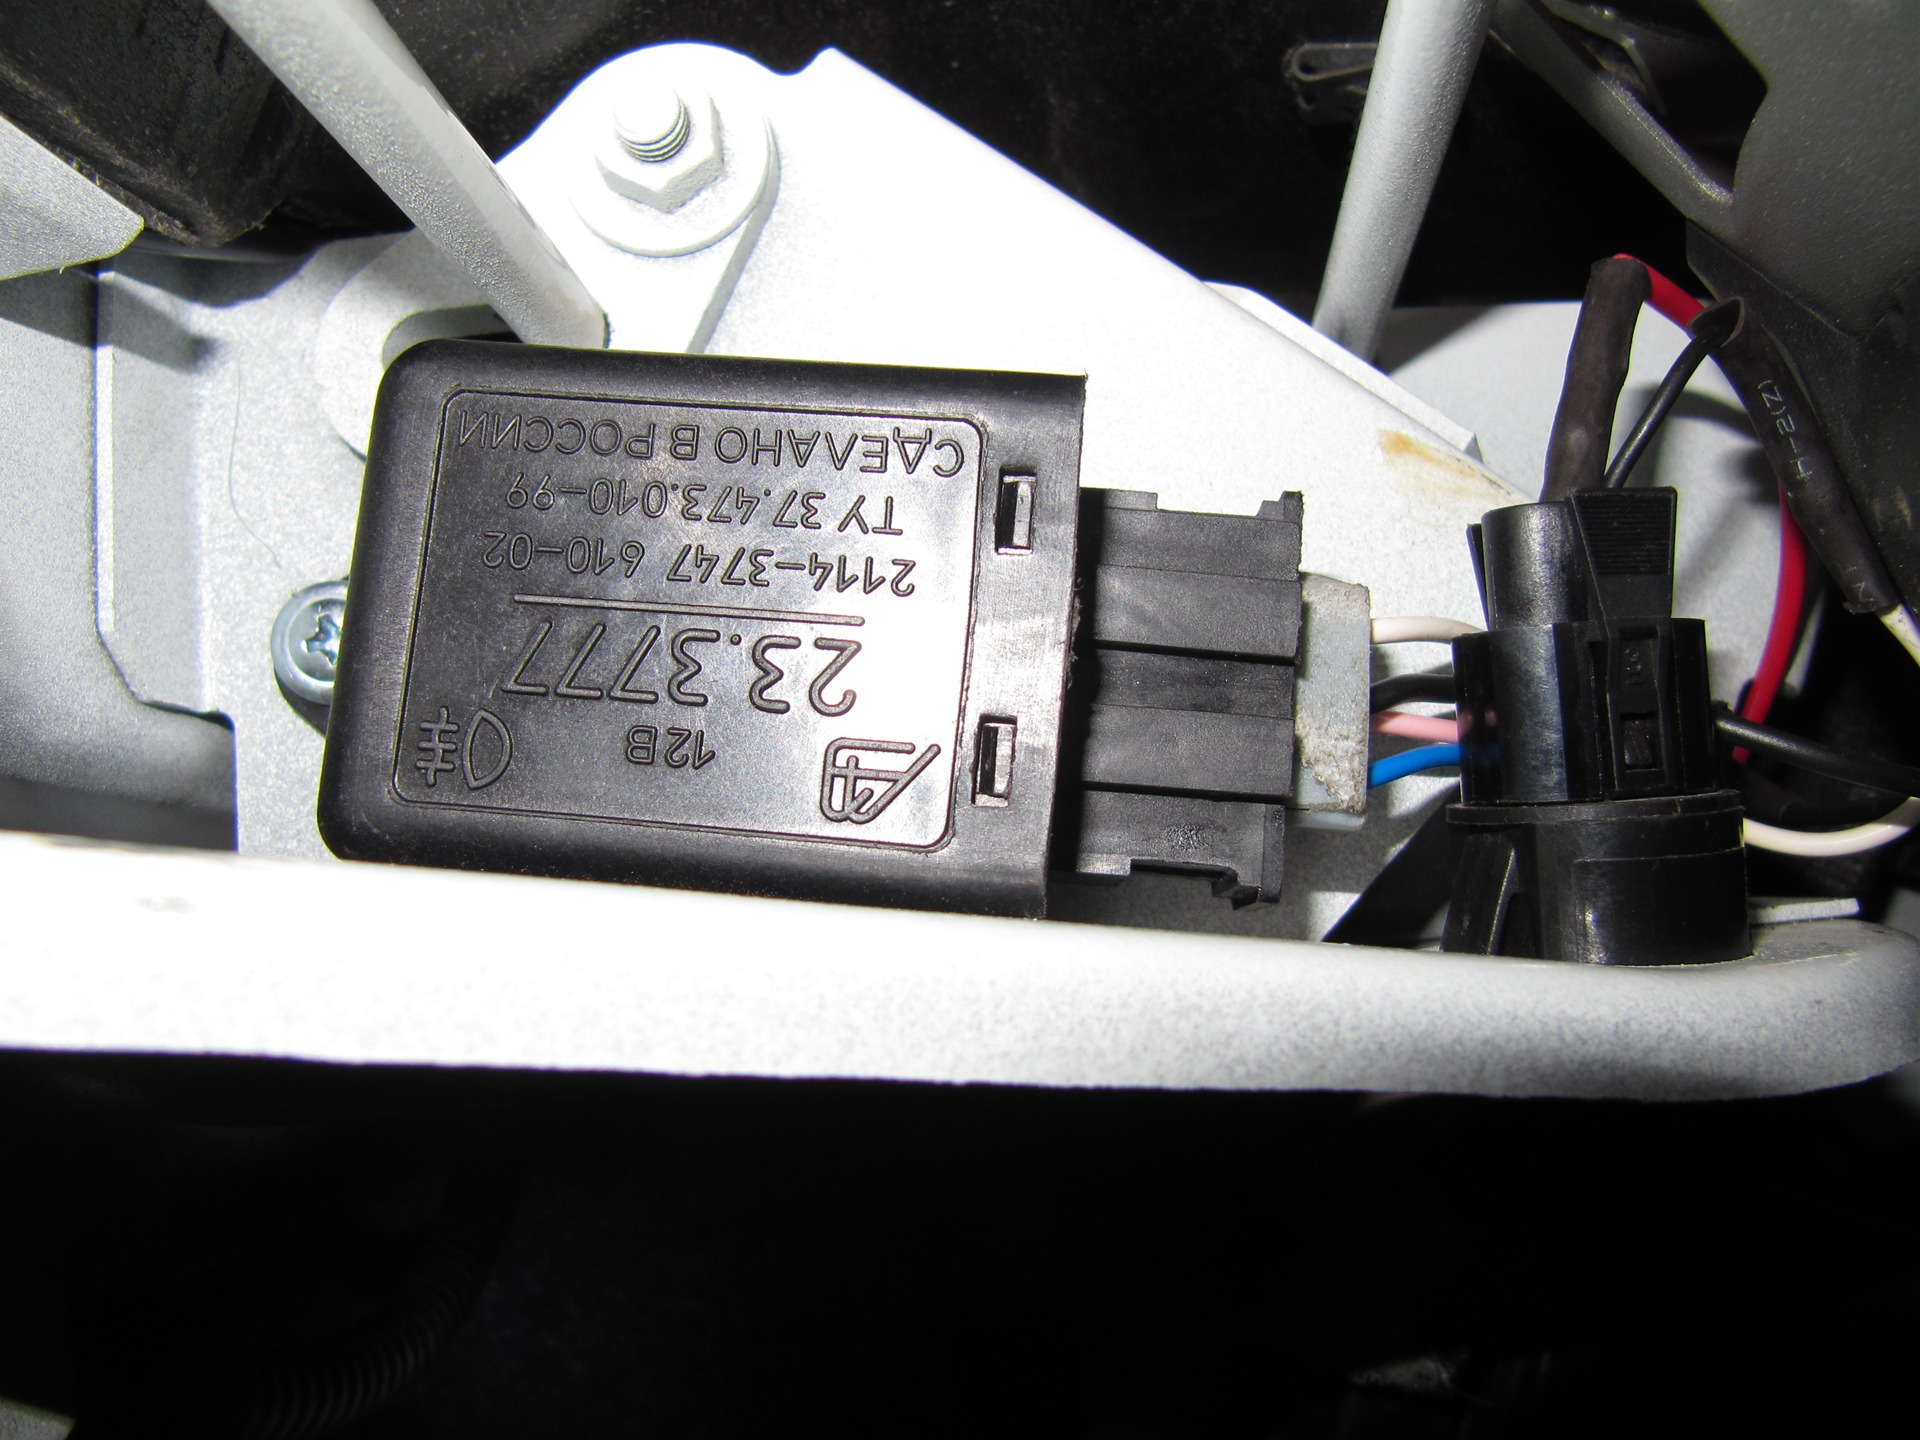 ВАЗ 2115 как работает свет в багажнике. При включении габаритов просаживается напряжение ВАЗ 2115.